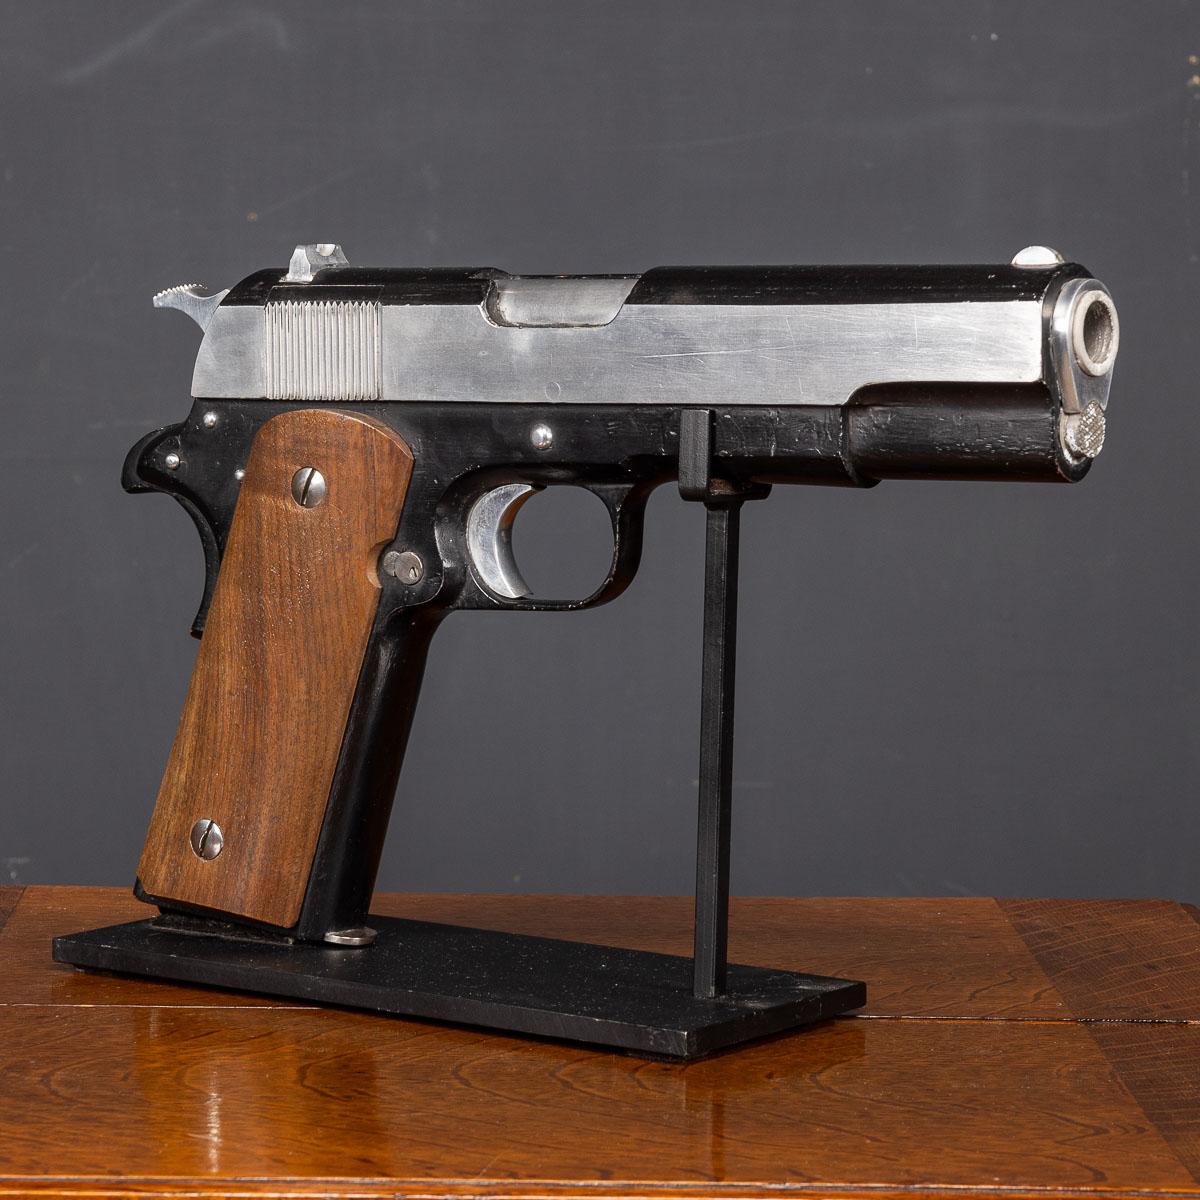 Ce grand modèle du M1911, qui mesure plus d'un mètre de haut, également connu sous le nom de Colt 1911 ou Colt Government pour les modèles produits par Colt, est une arme à feu emblématique. Ce pistolet semi-automatique à simple action, actionné par